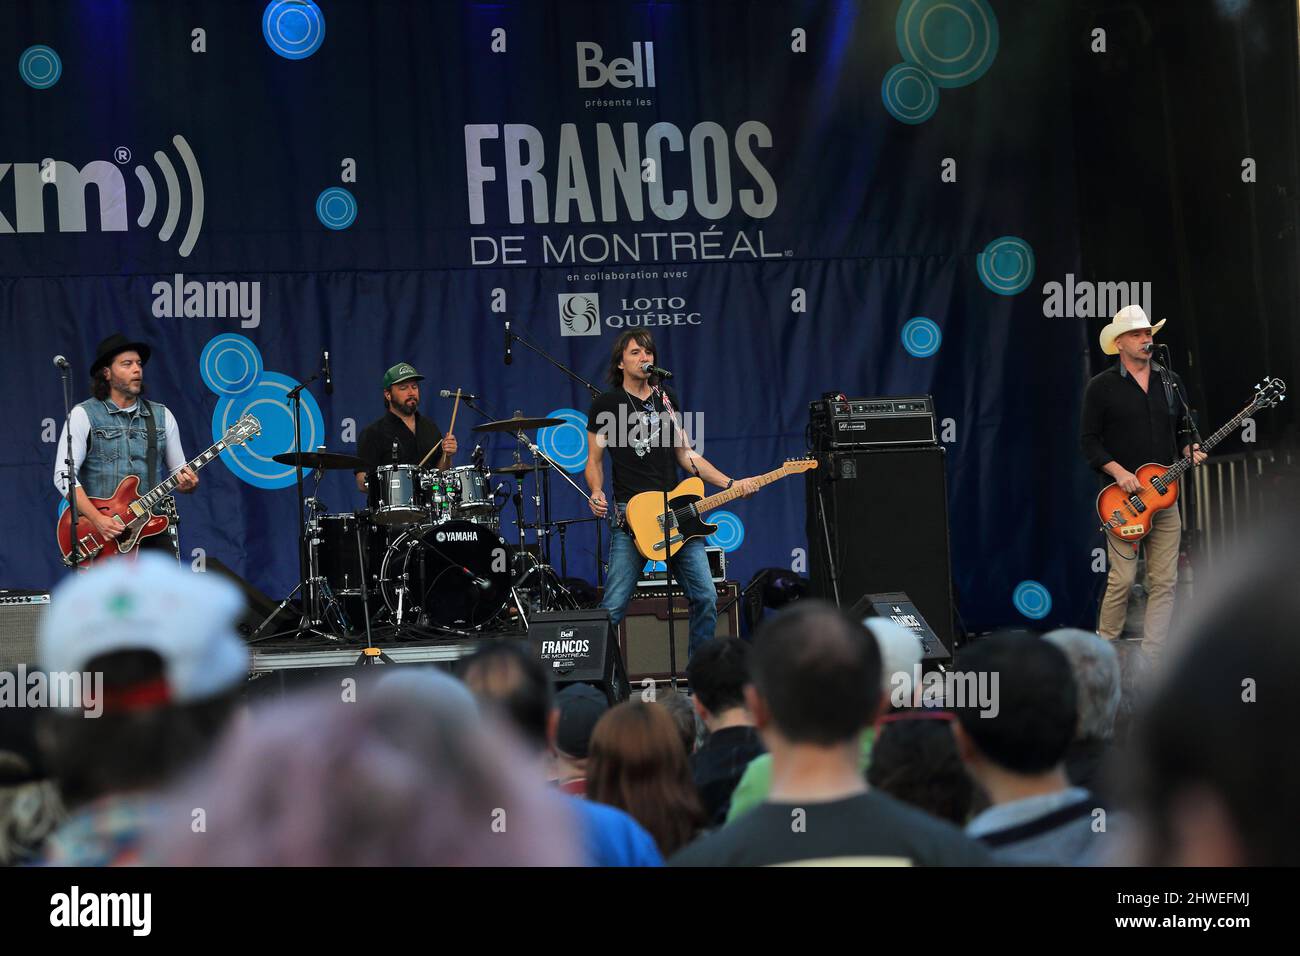 Die französische kanadische Rockgruppe Les Respectables spielt auf der Bühne des französischen Musikfestivals Francofolie in der Innenstadt von Montreal. Quebec, Kanada Stockfoto